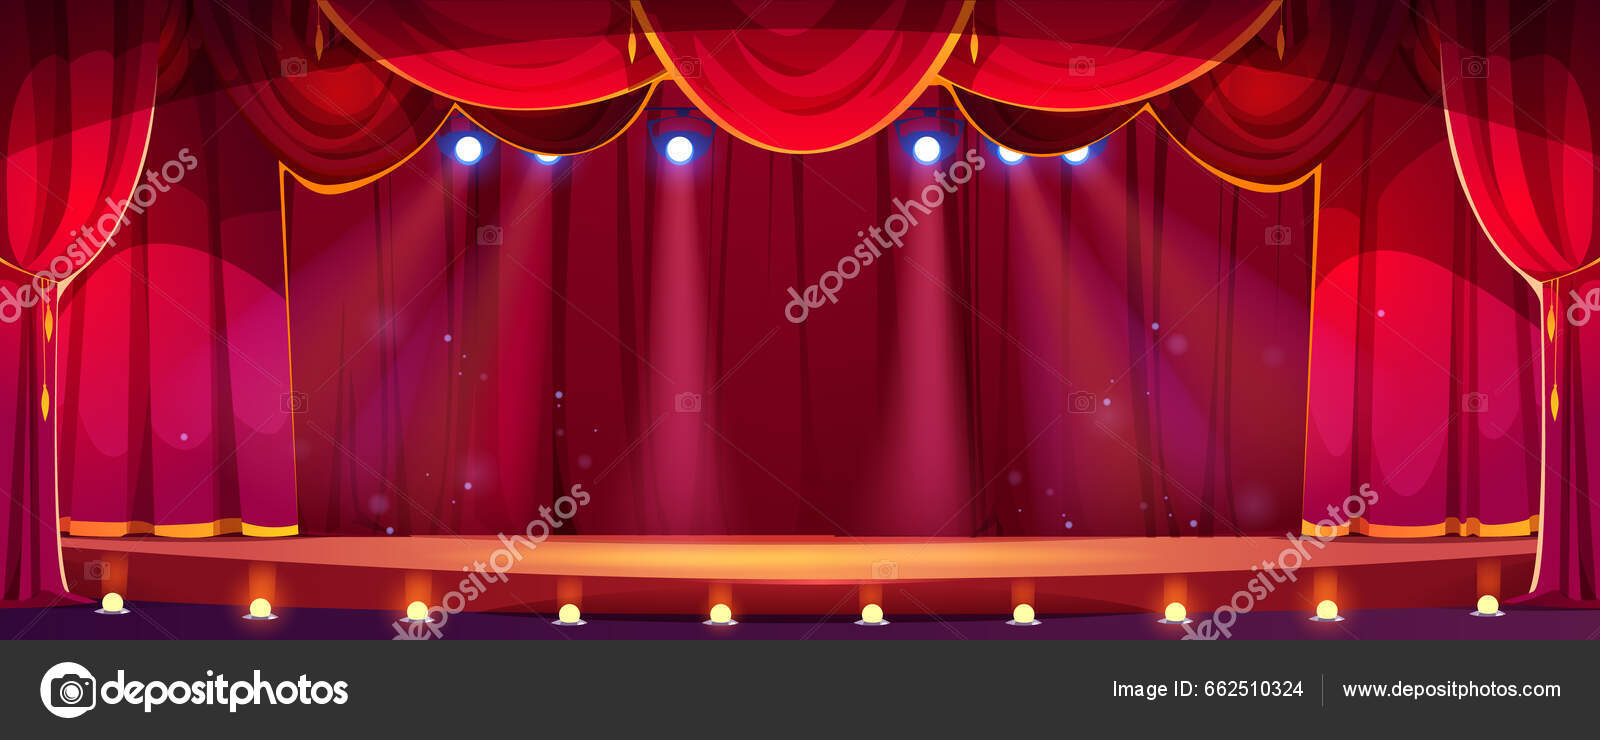 Palco de teatro com cortinas vermelhas e em luz. Desenho animado vetorial  ilustração do interior do